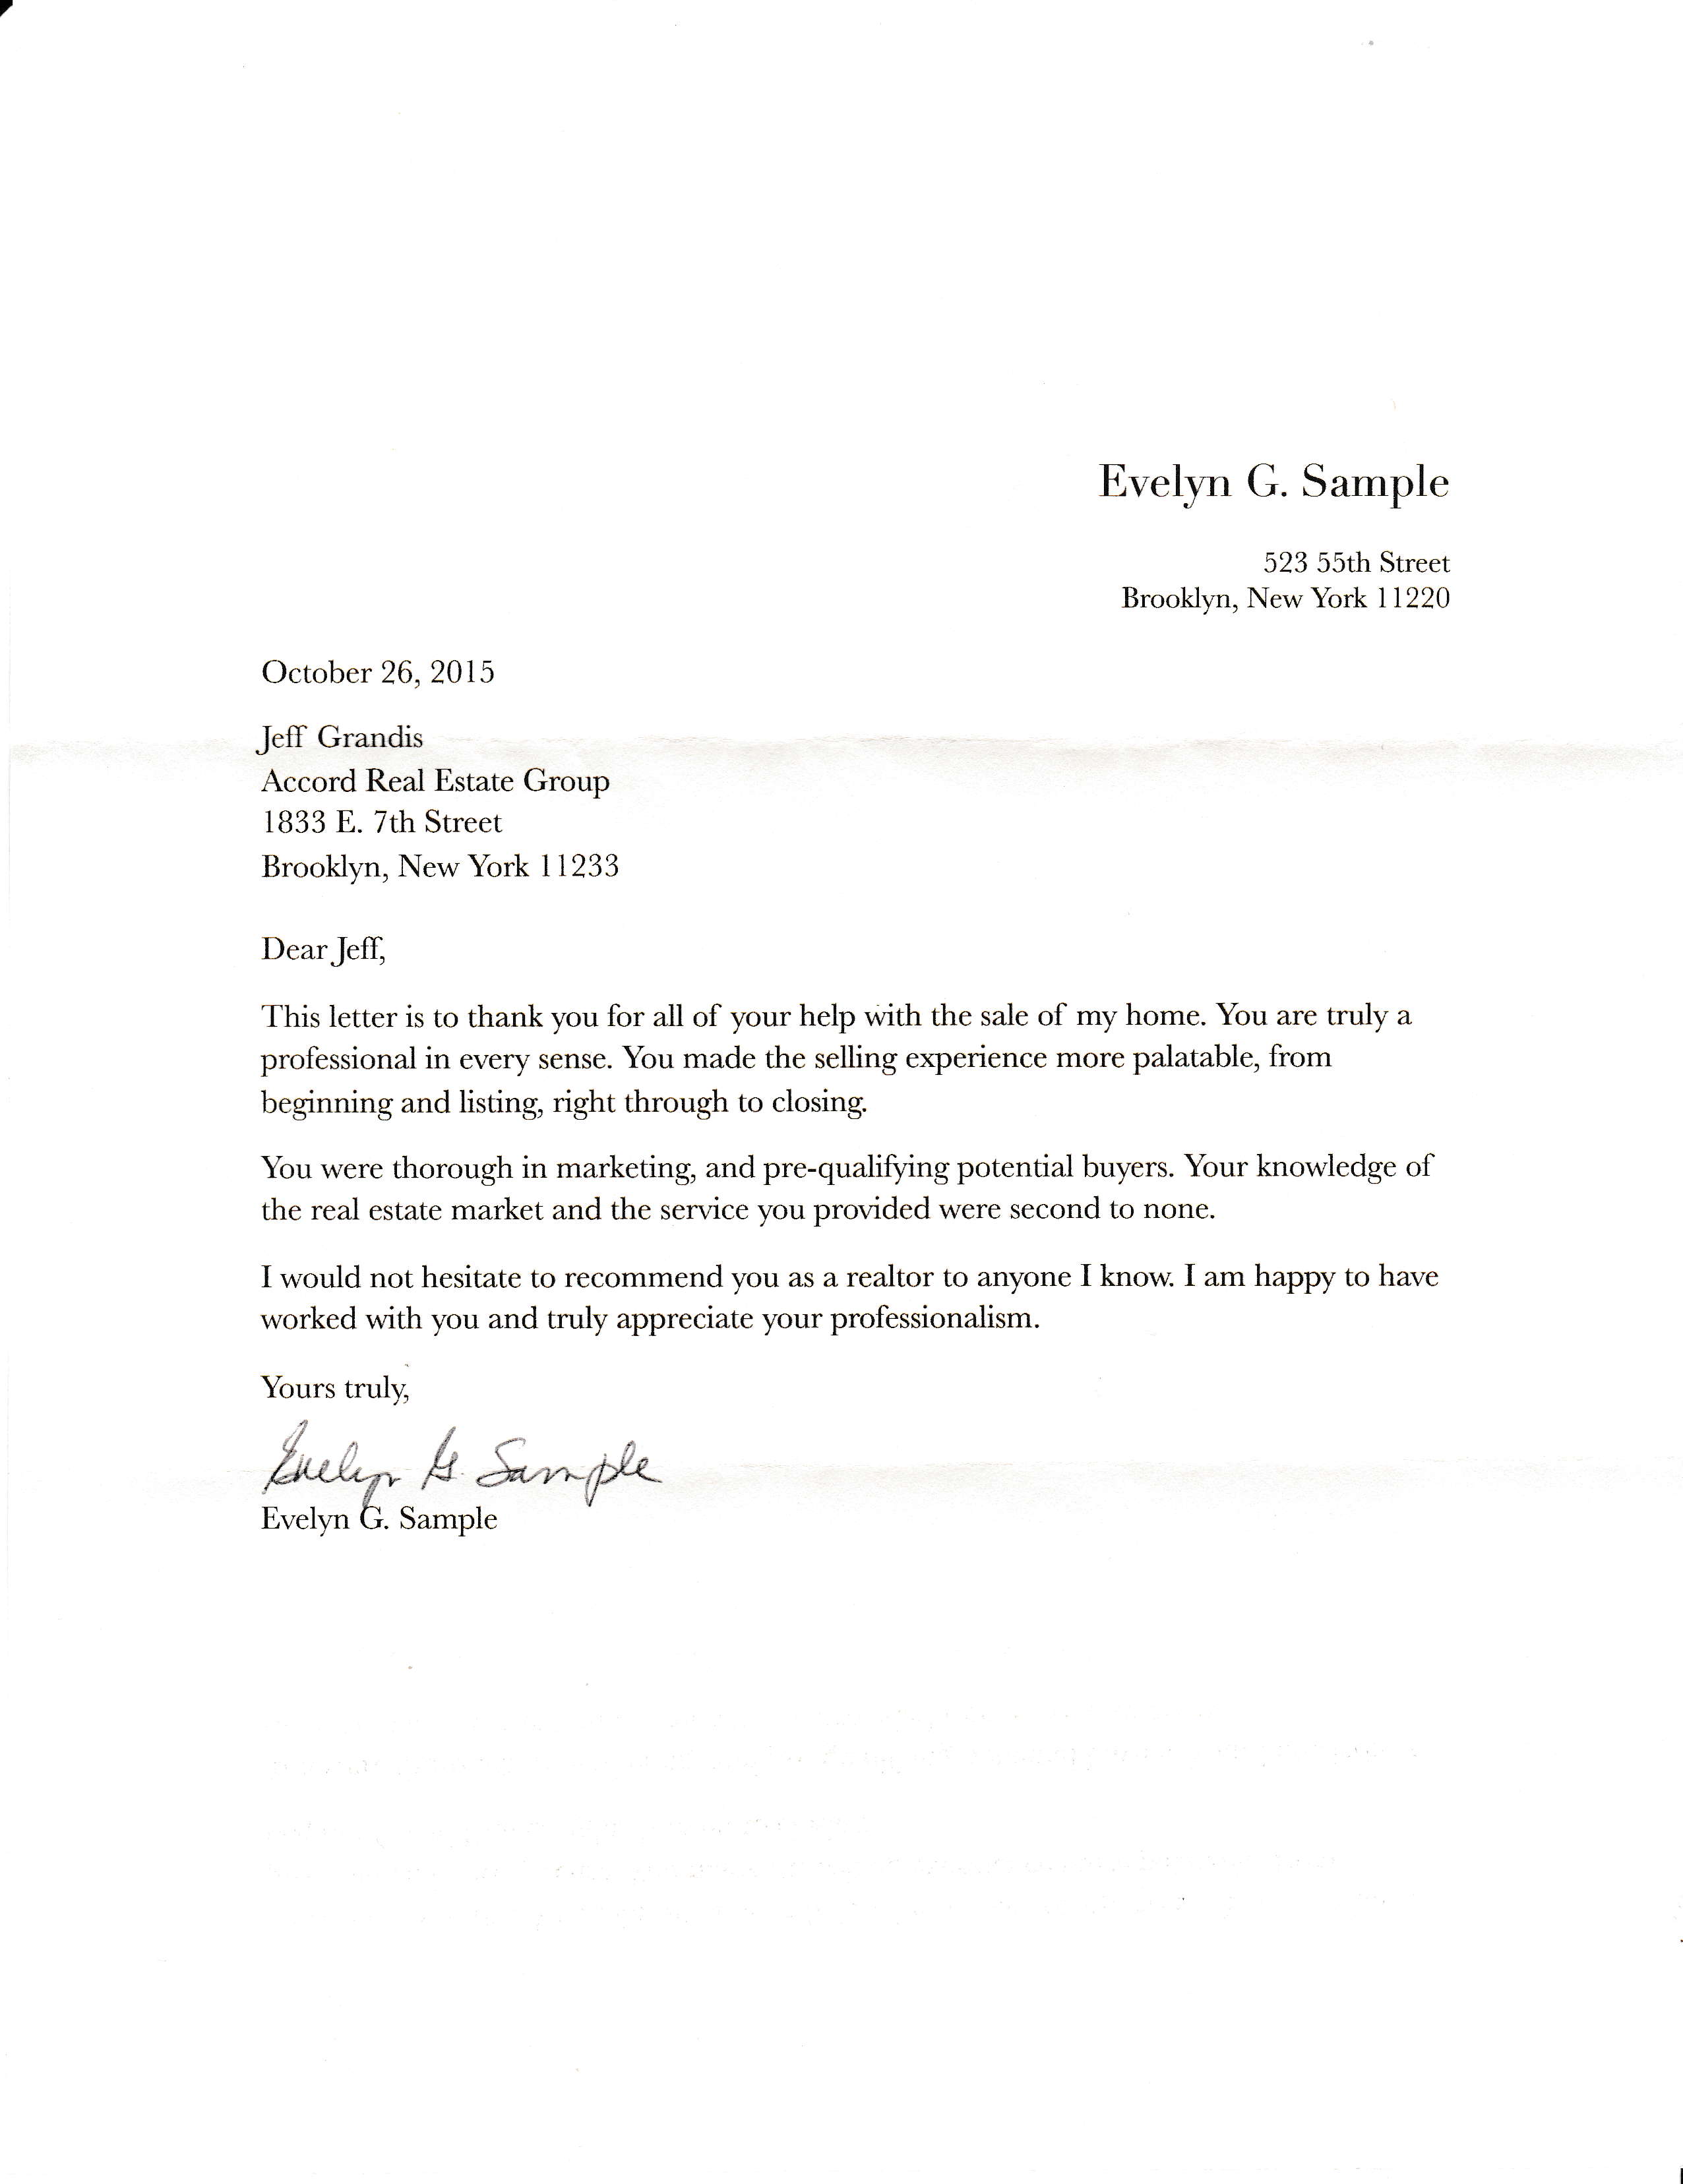 Testimonial Letter from Evelyn Sample